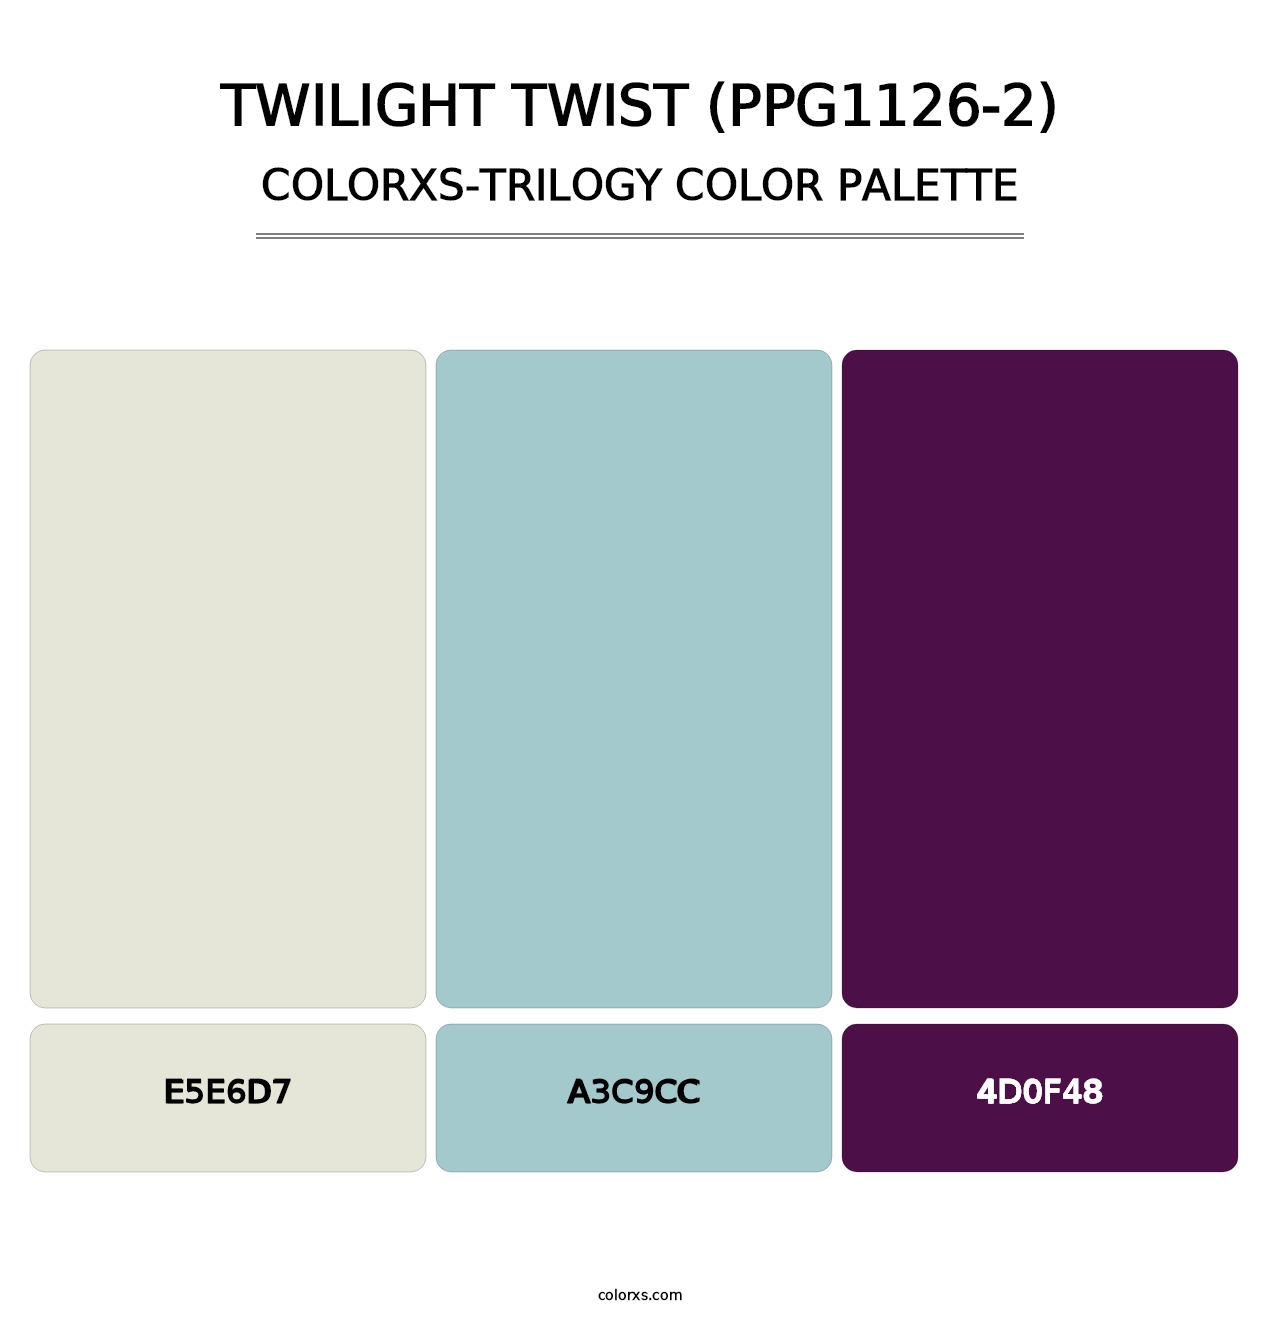 Twilight Twist (PPG1126-2) - Colorxs Trilogy Palette